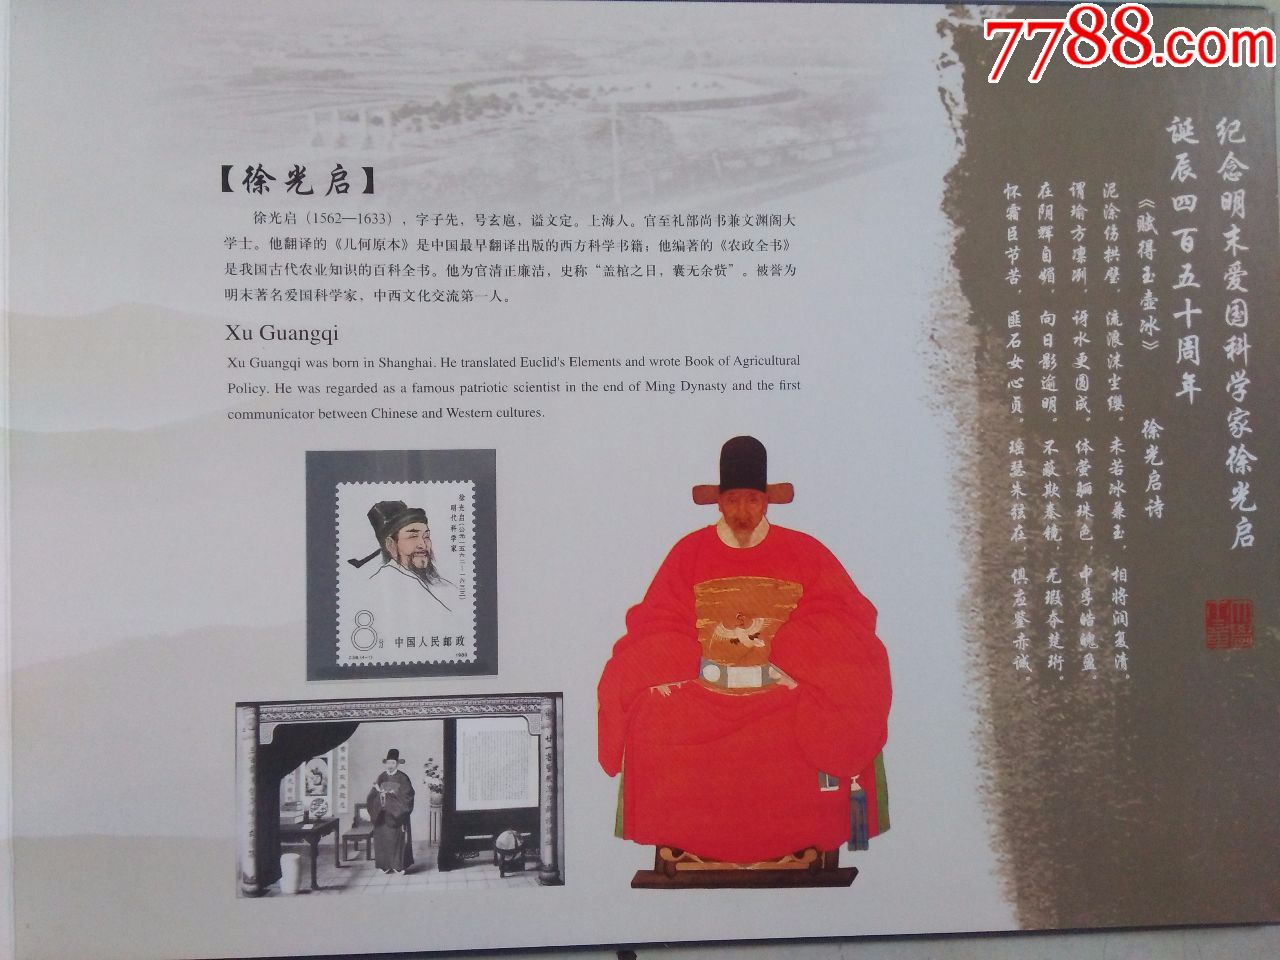 纪念明末爱国科学家徐光启诞辰450周年(邮票纪念册)